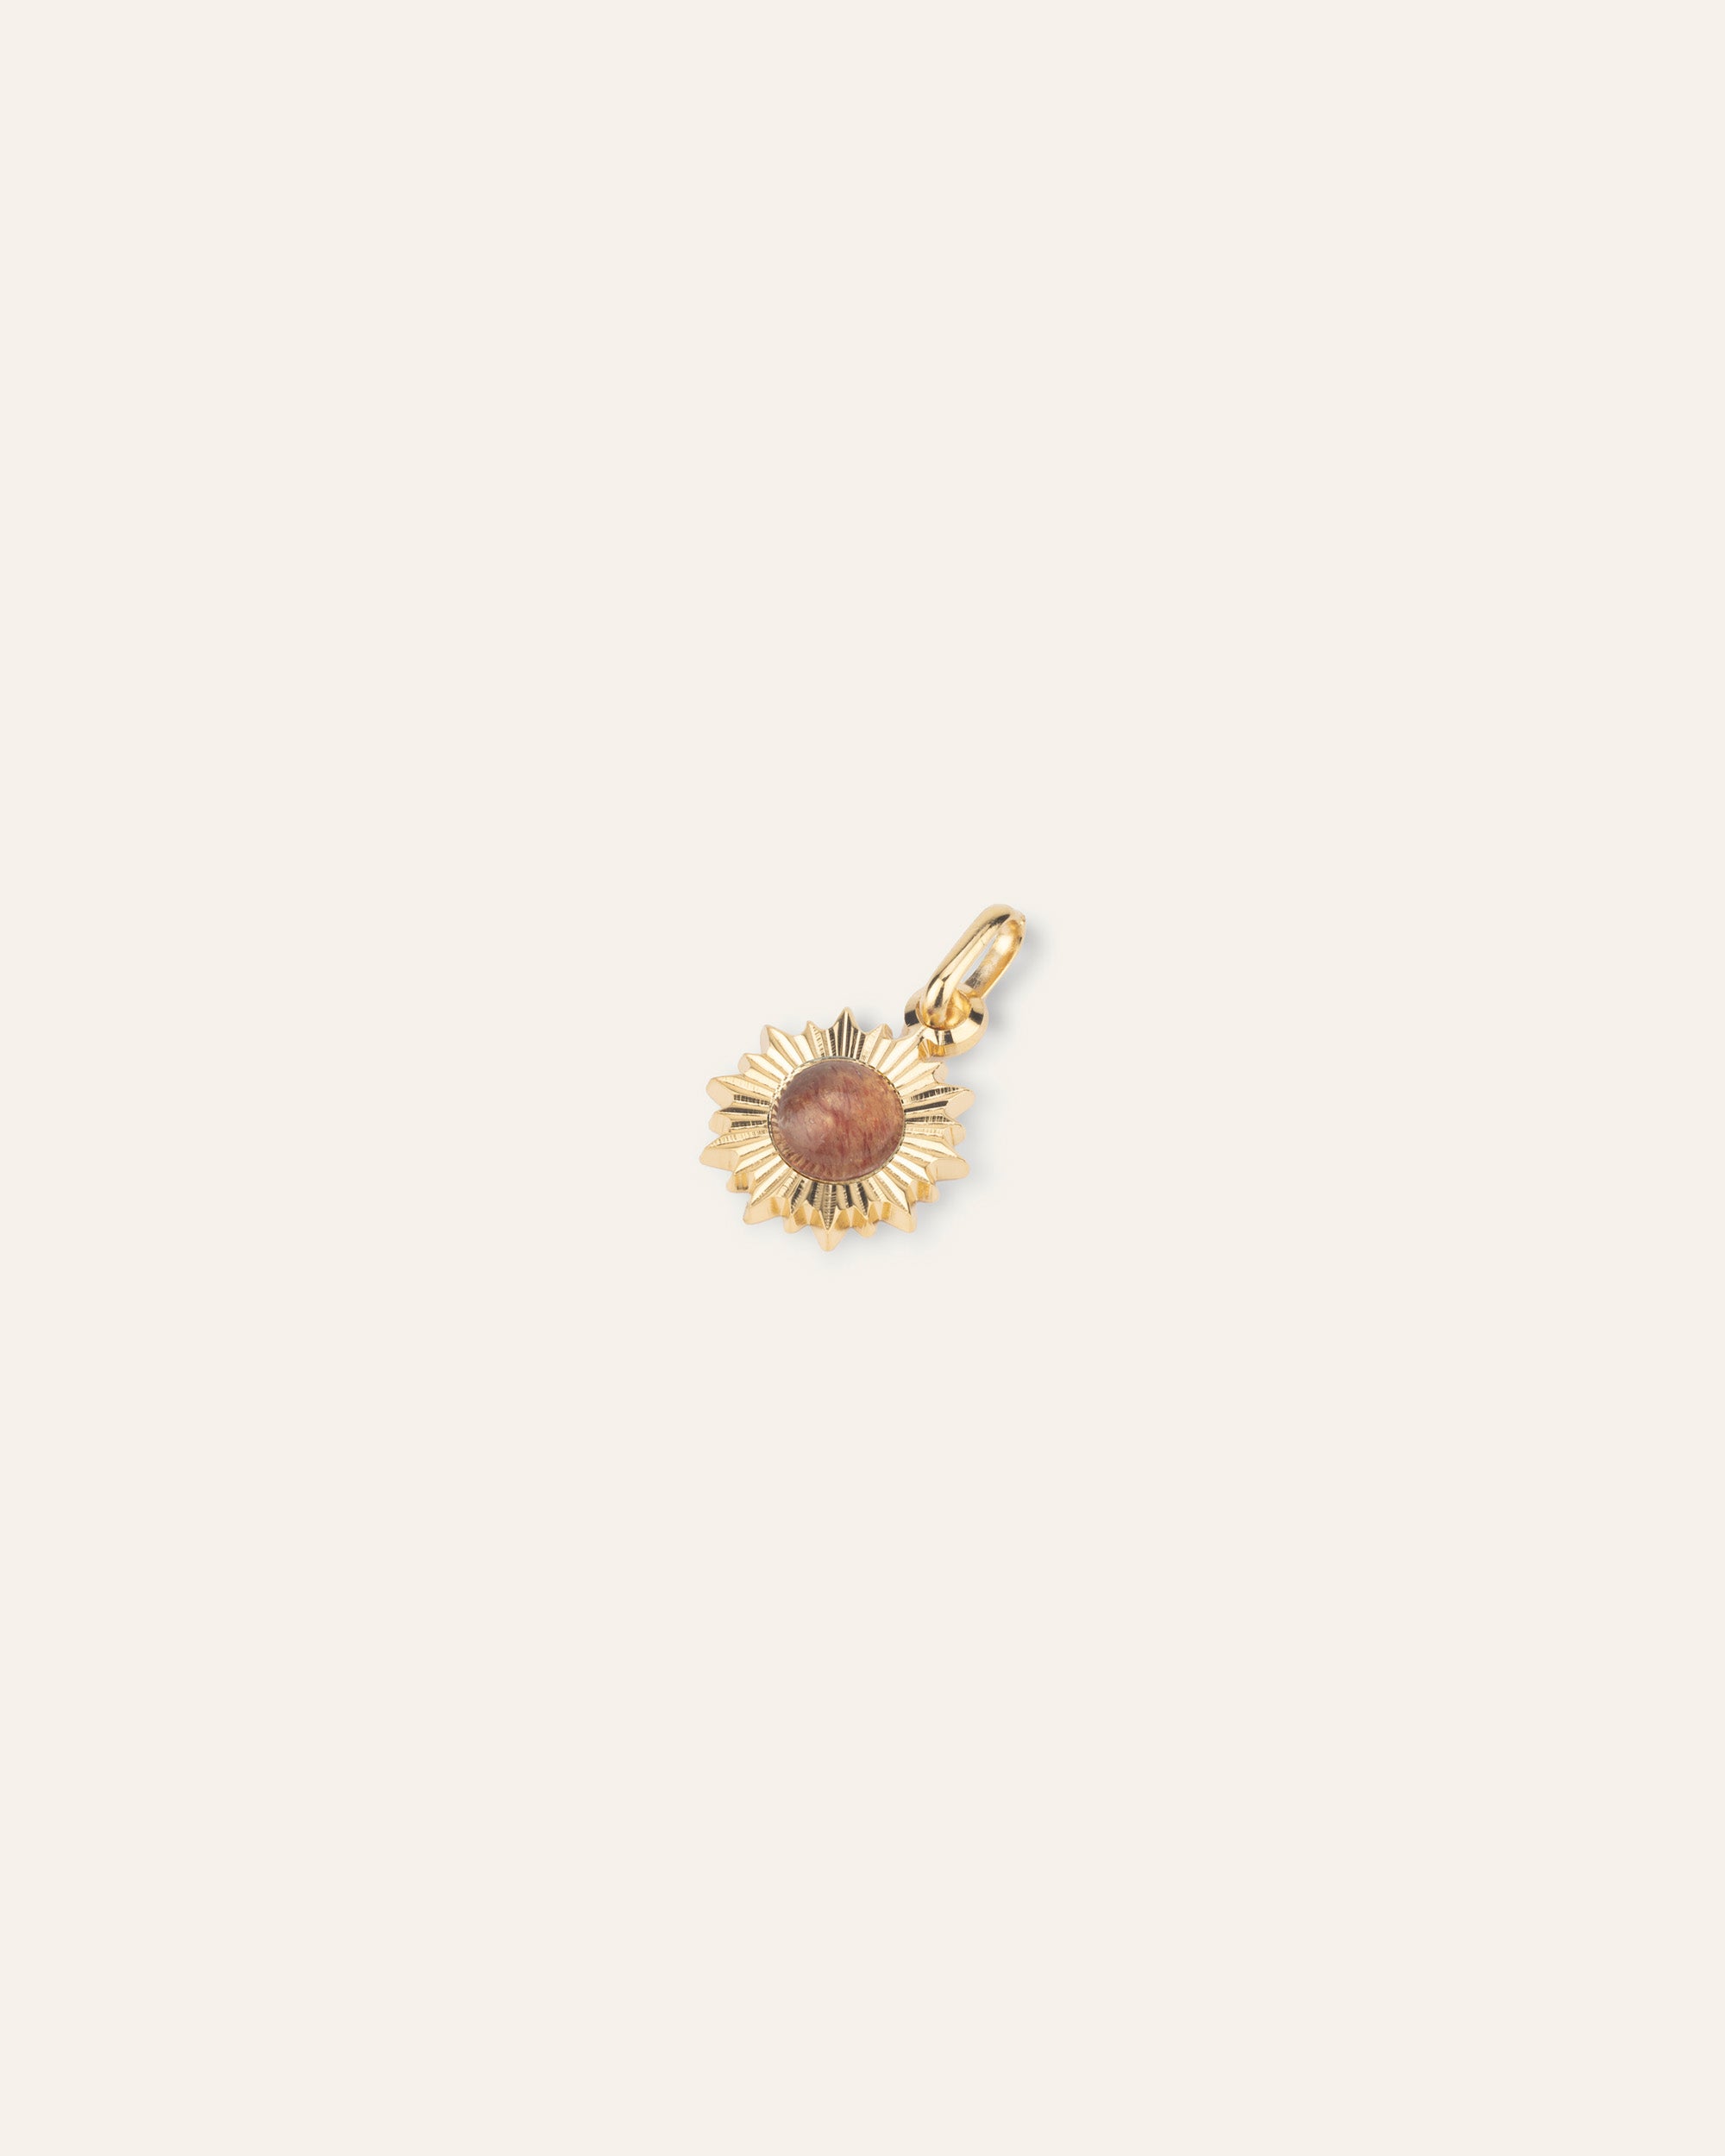 Ilios gold and raspberry quartz pendant